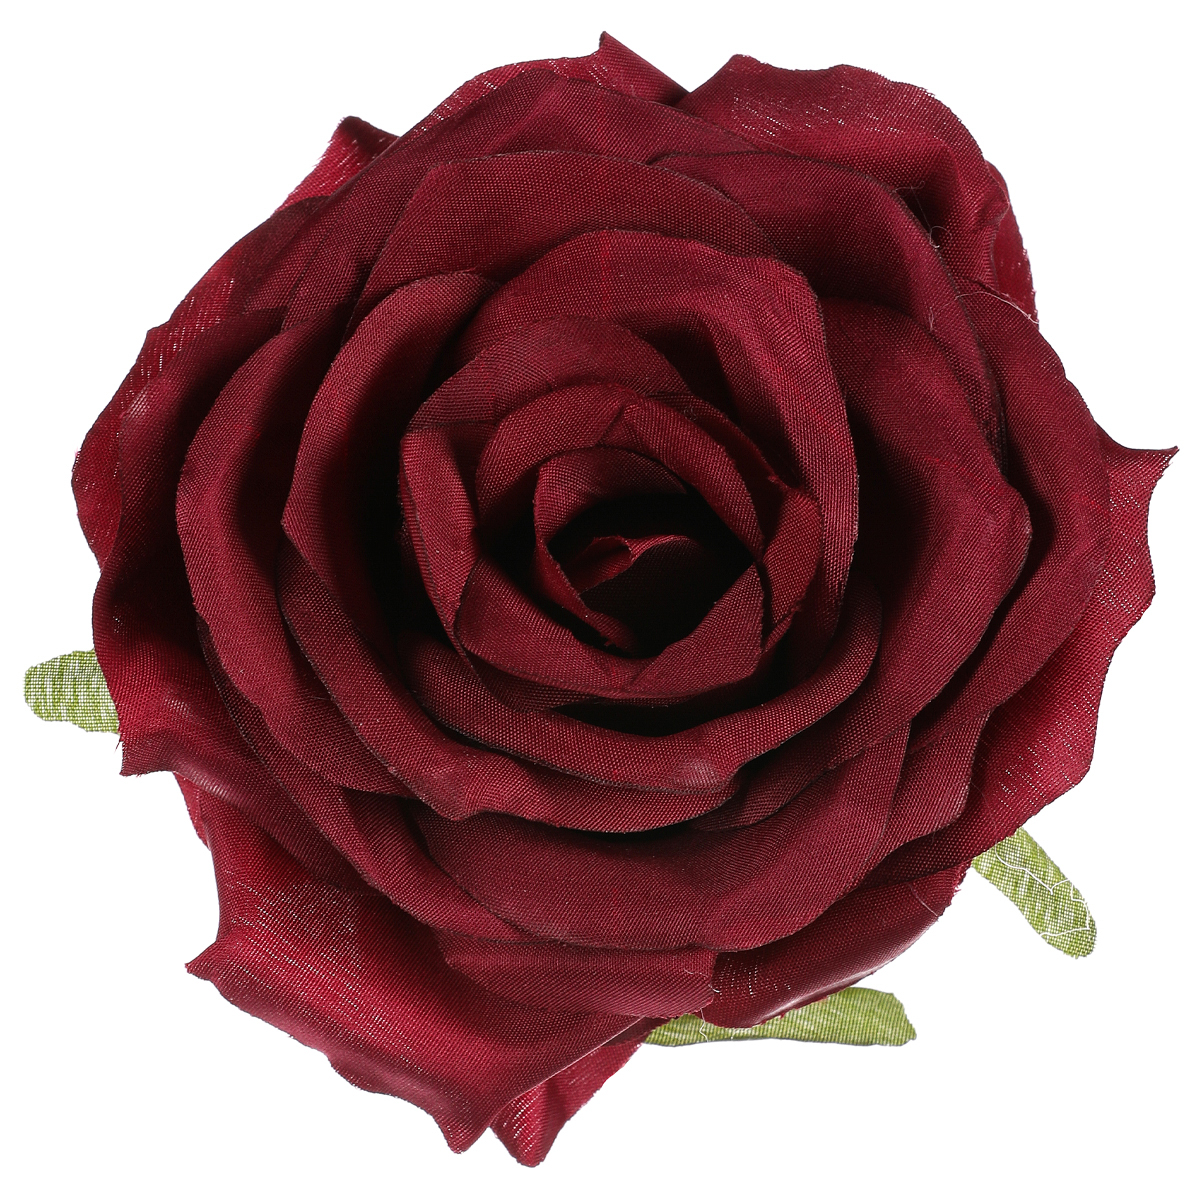 Růže, barva tmavě červená,květina umělá vazbová. Cena za balení 12 ks